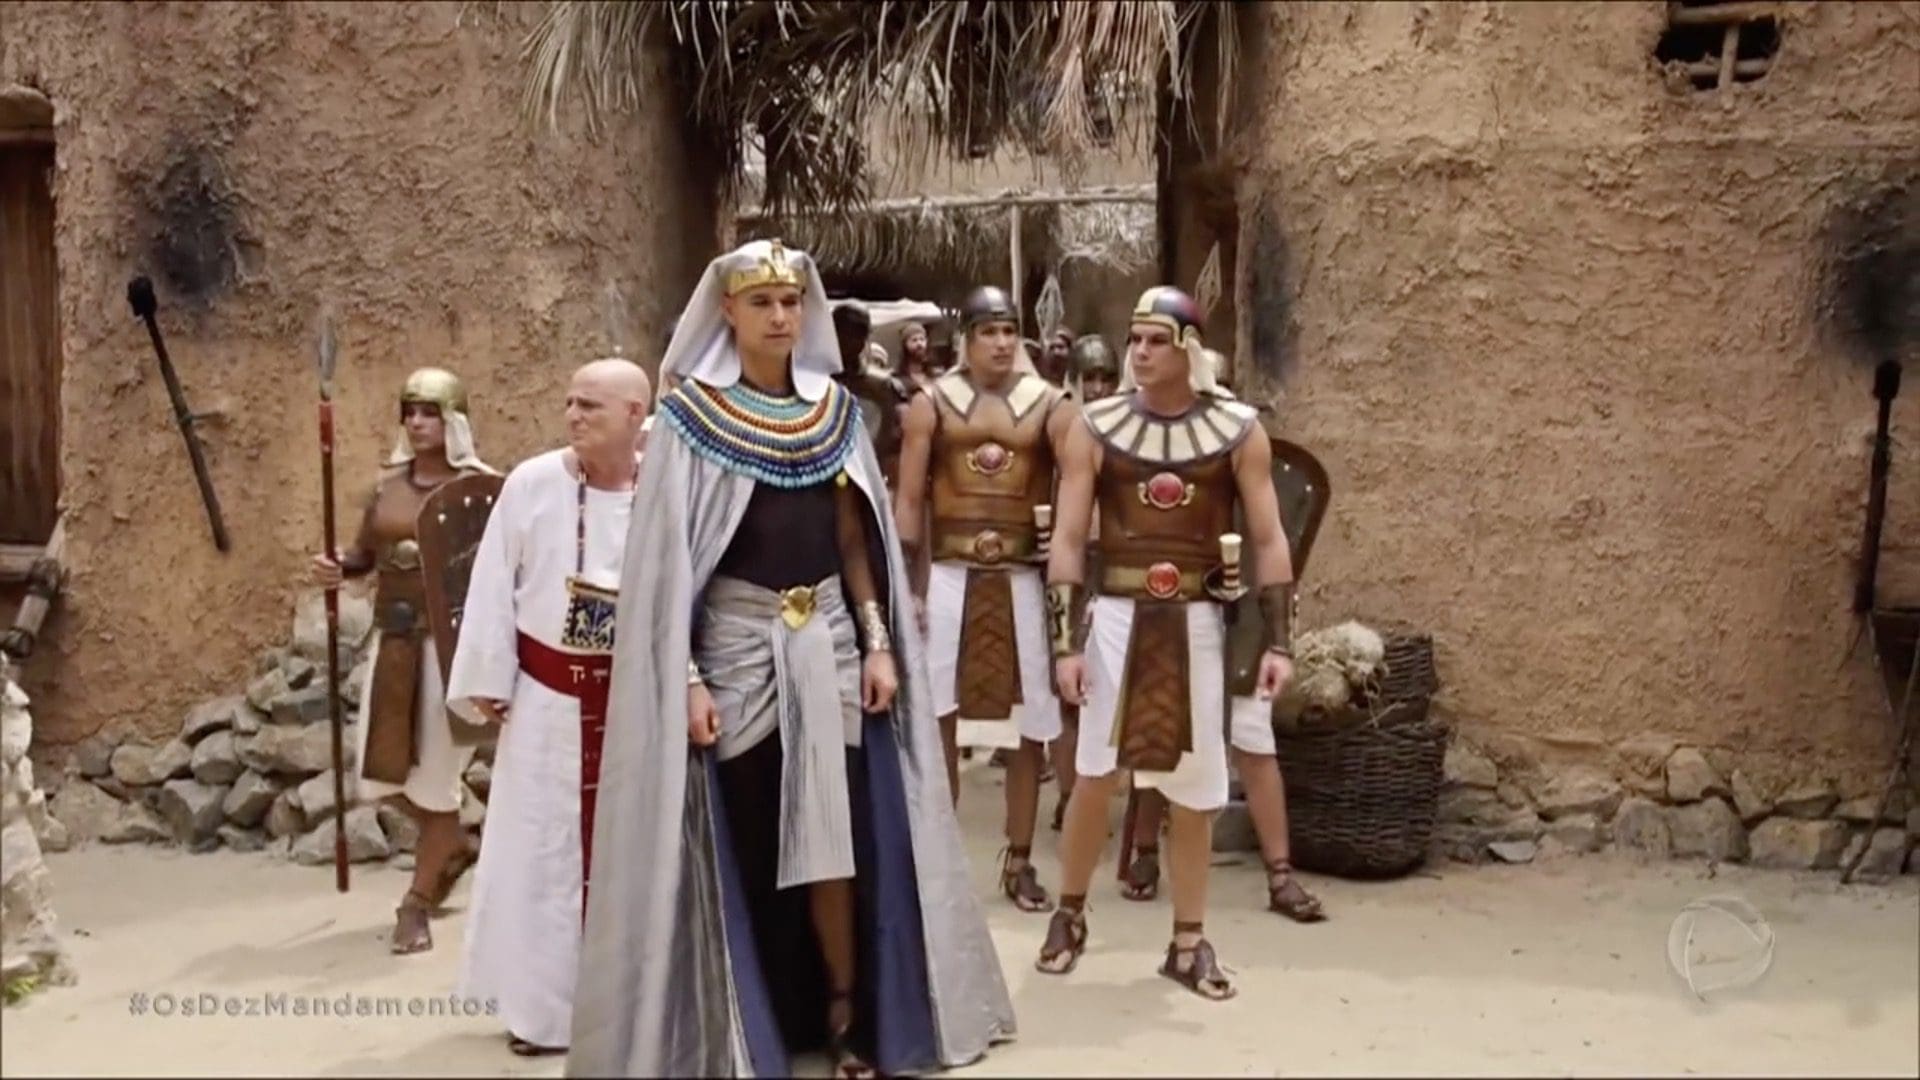 Ramsés resolve matar Joquebede, a mulher vai parar na forca e Moisés choca  com ação